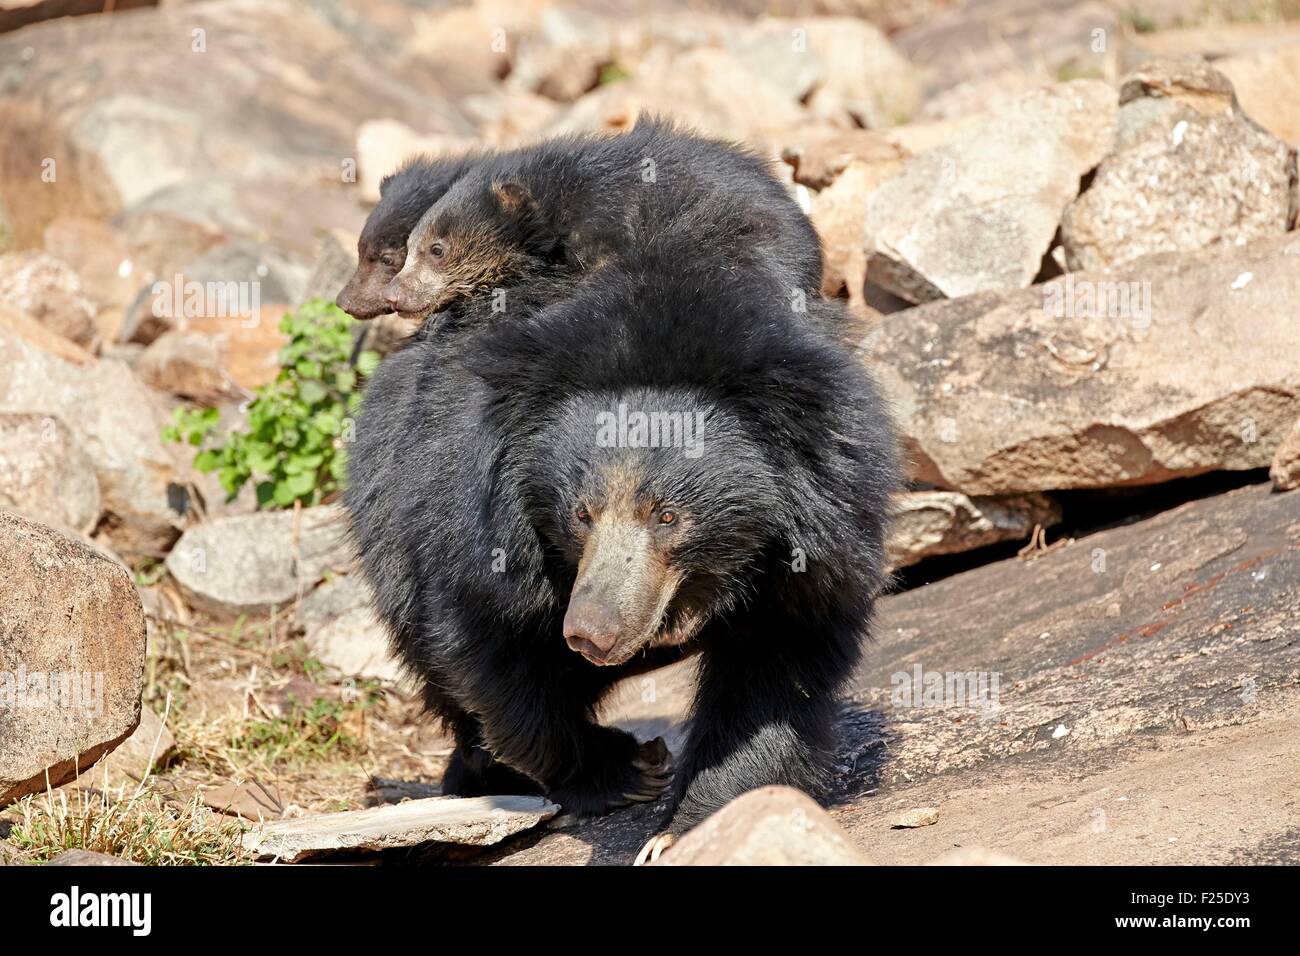 India, nello stato di Karnataka, Sandur Mountain Range, Sloth bear (Melursus ursinus), madre con bambino, madre trasportare neonati sul retro Foto Stock